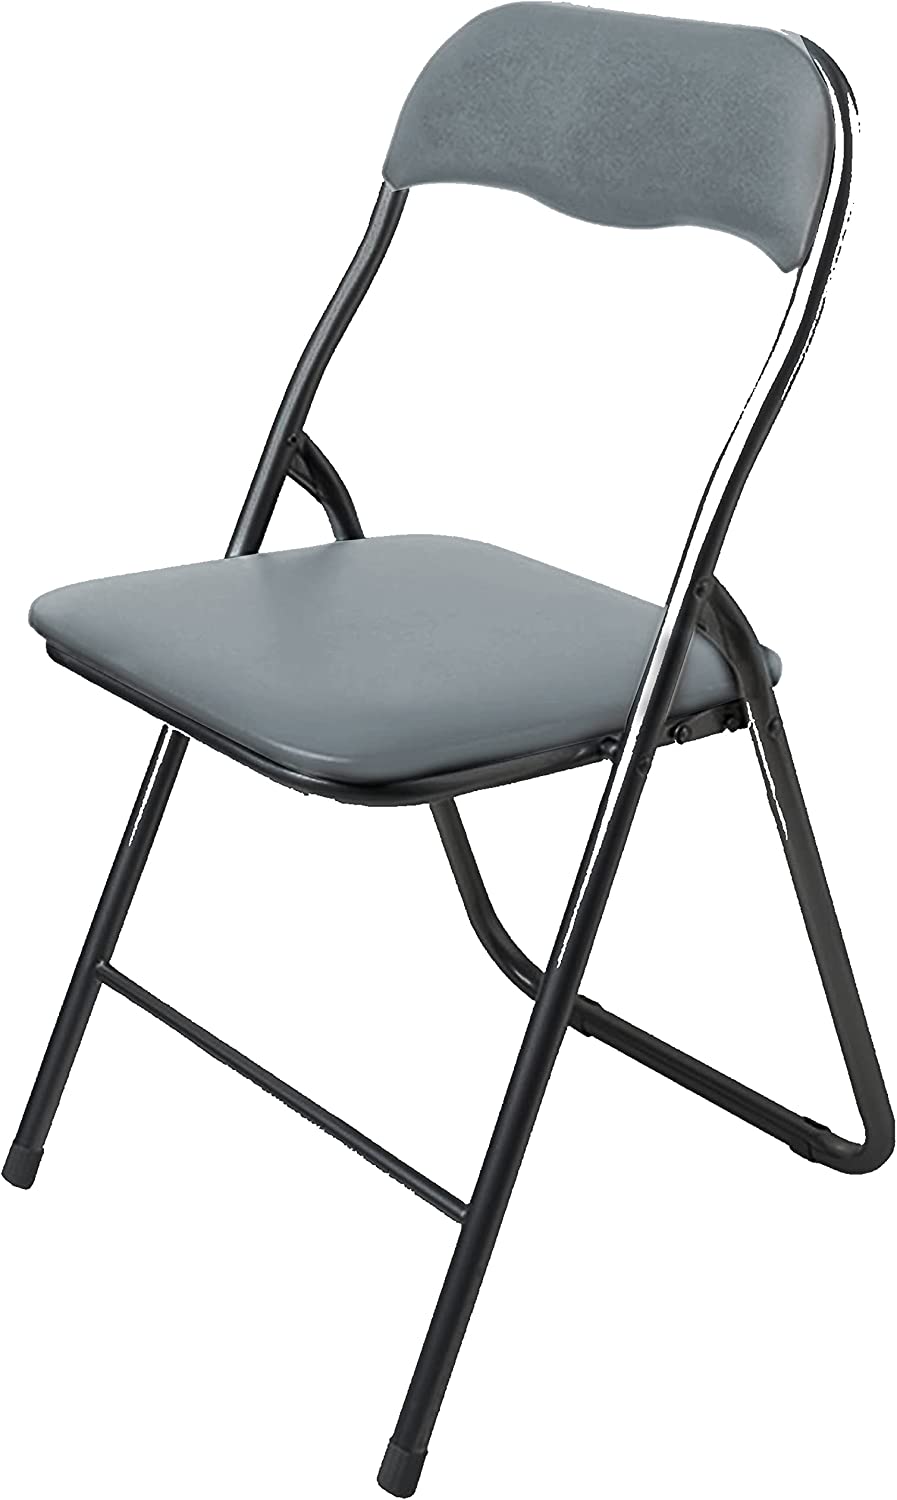 Paquete de 4 sillas plegables de plástico blanco, cómodas sillas plegables  de resina, sillas de comedor ligeras con asientos acolchados de PVC para